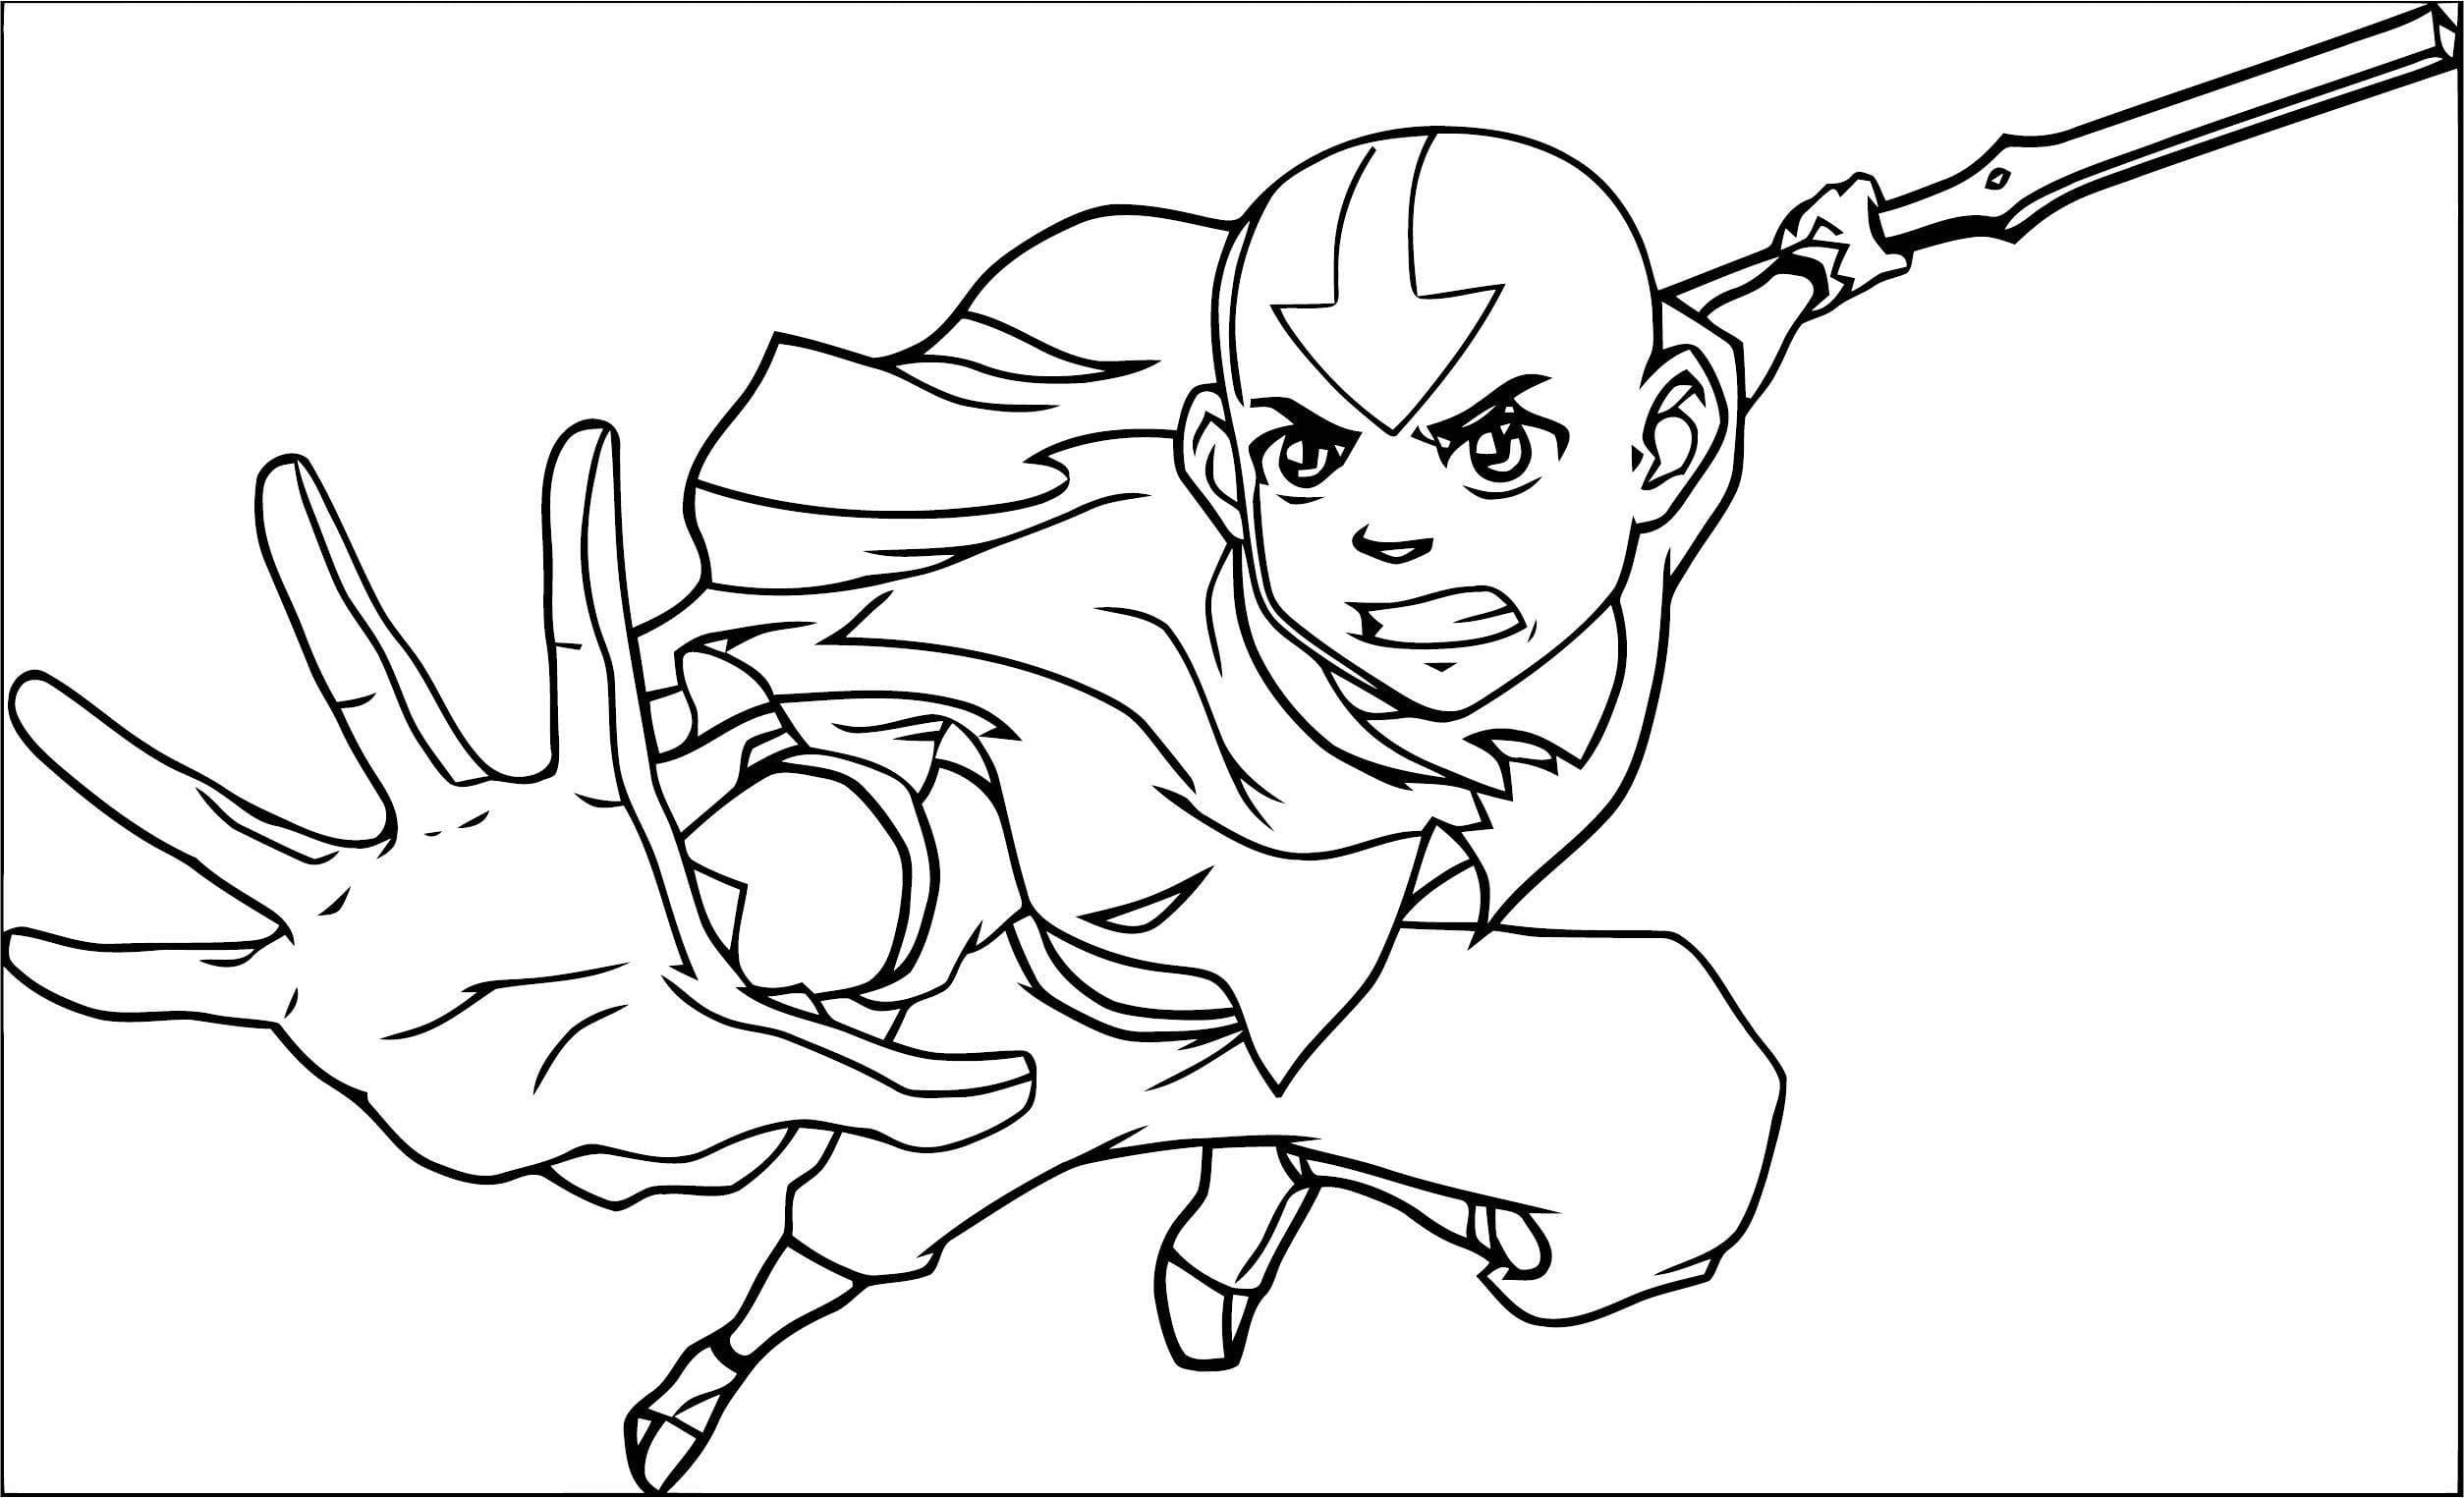 Desenhos do Avatar: A Lenda de Aang para Colorir - 100 imagens para impressão